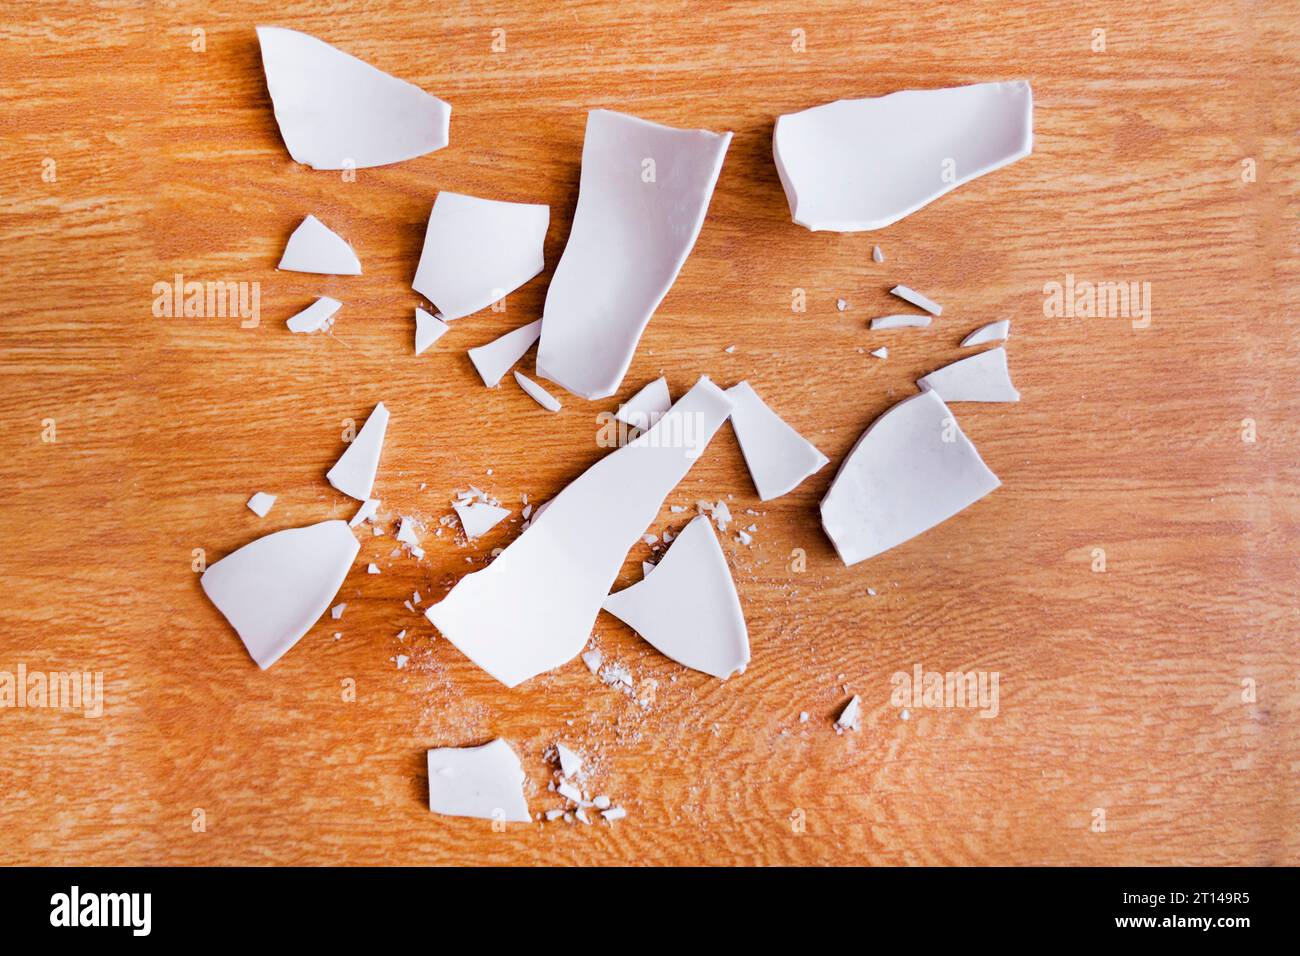 Scherben auf dem Hintergrund. Splitter, Fragmente eines Geschirrs auf dem Boden. Trümmer und Stücke eines gebrochenen Teller, Schale Stockfoto